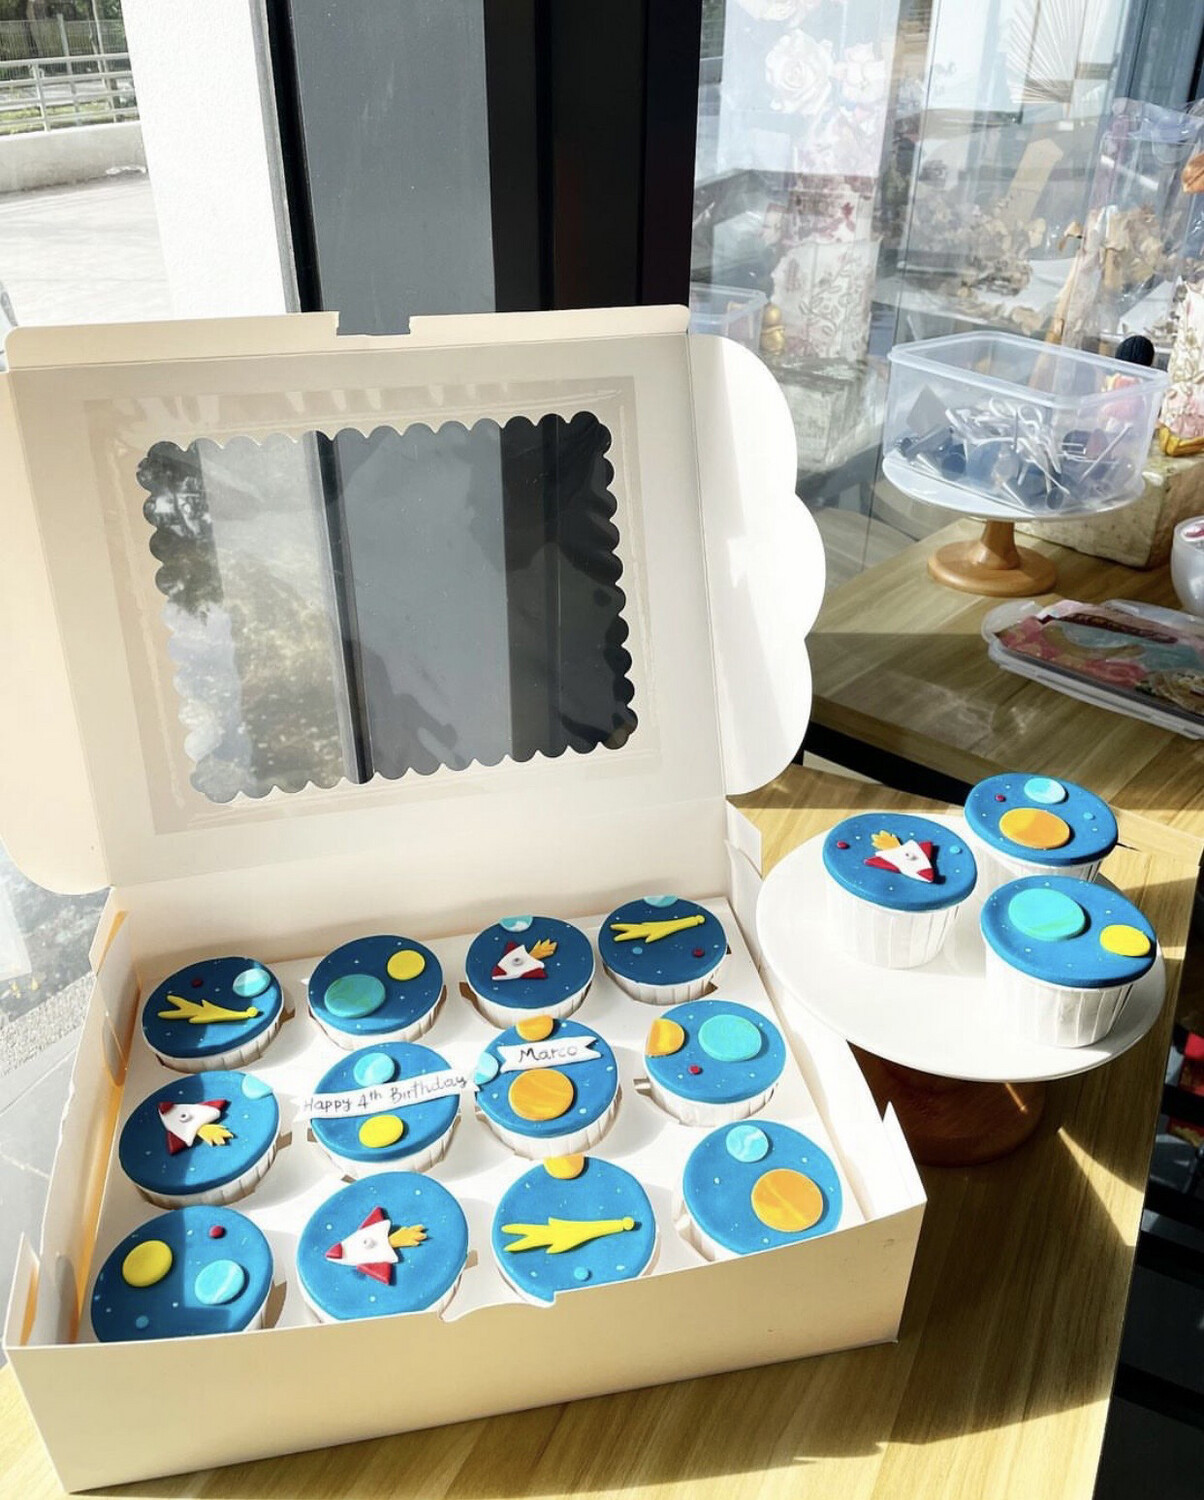 Space NASA Cupcakes